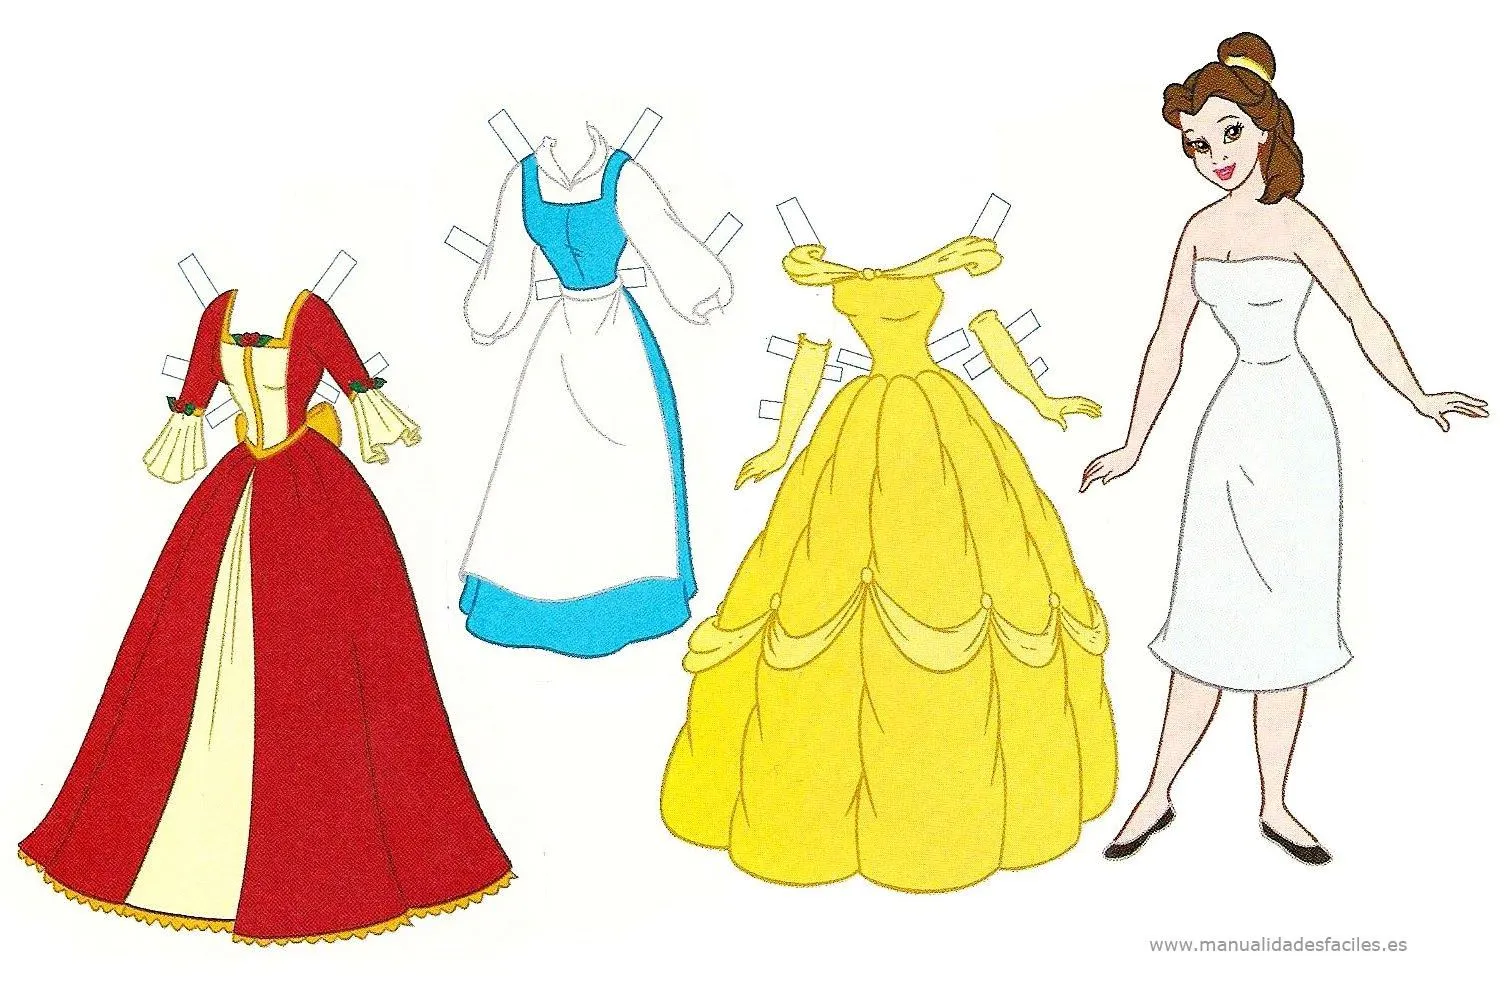 Muñecas recortables de las princesas Disney | Manualidades faciles